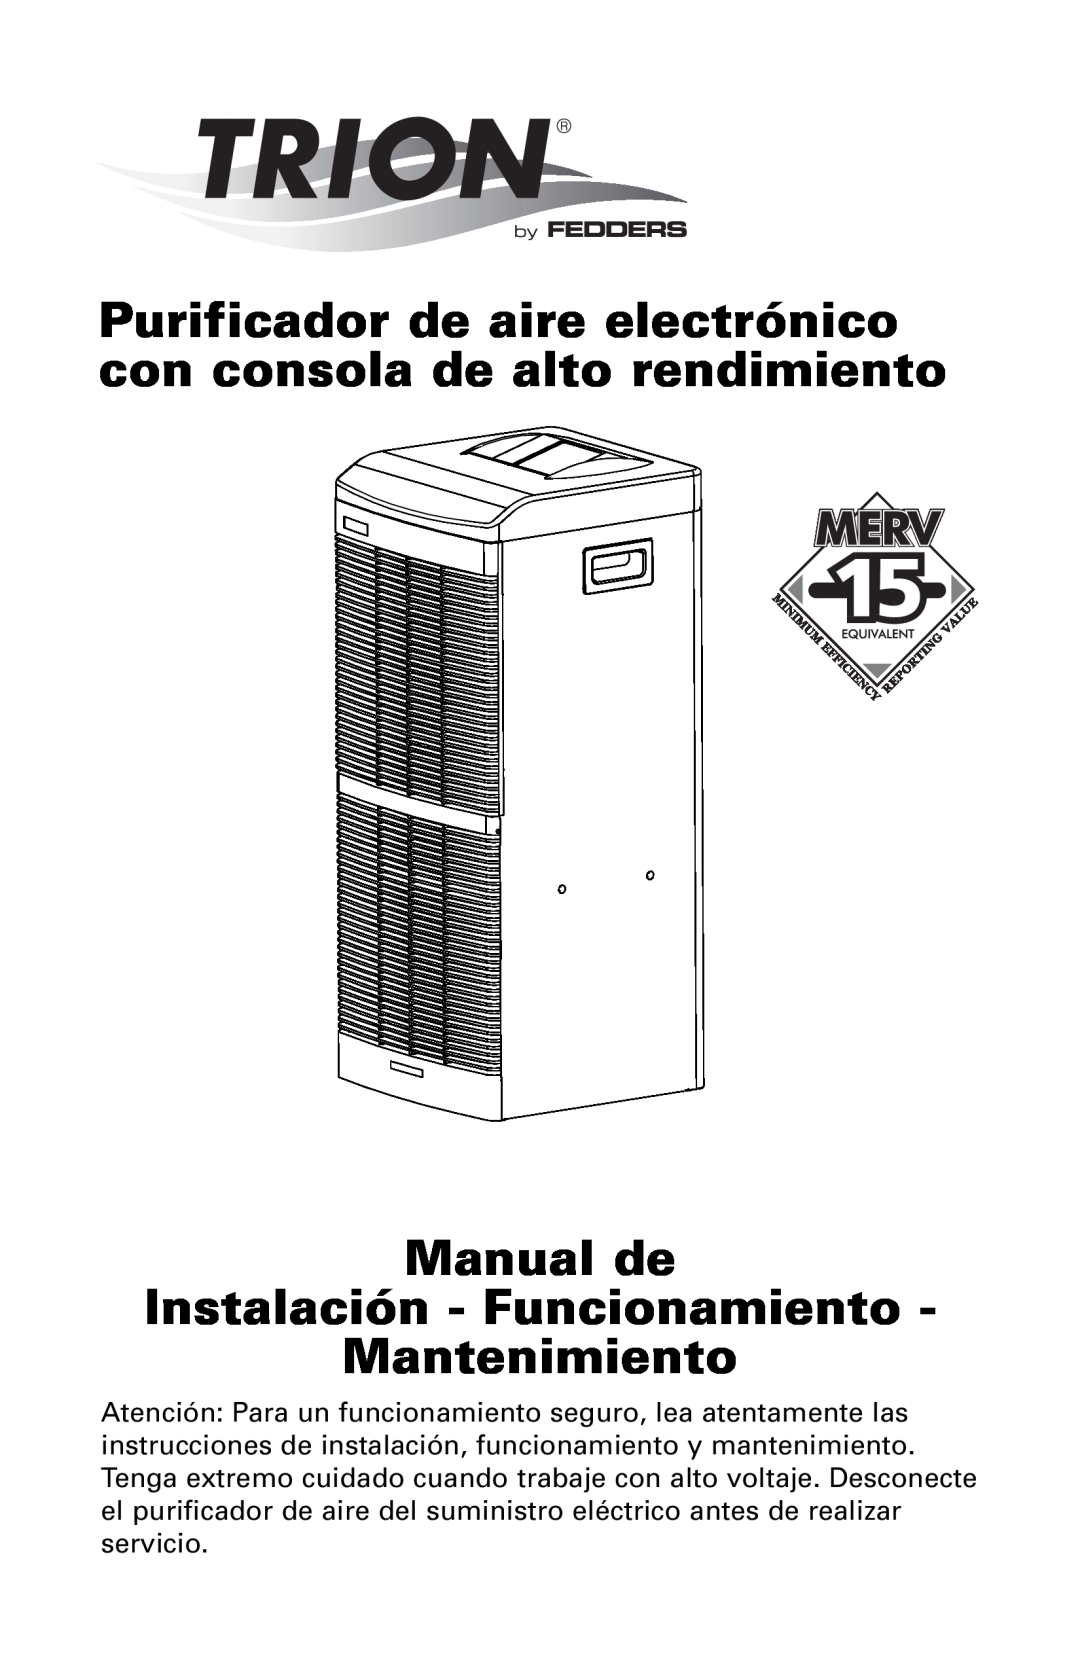 Trion High Efficiency Console Electronic Air Purifier manual Manual de Instalación - Funcionamiento, Mantenimiento 